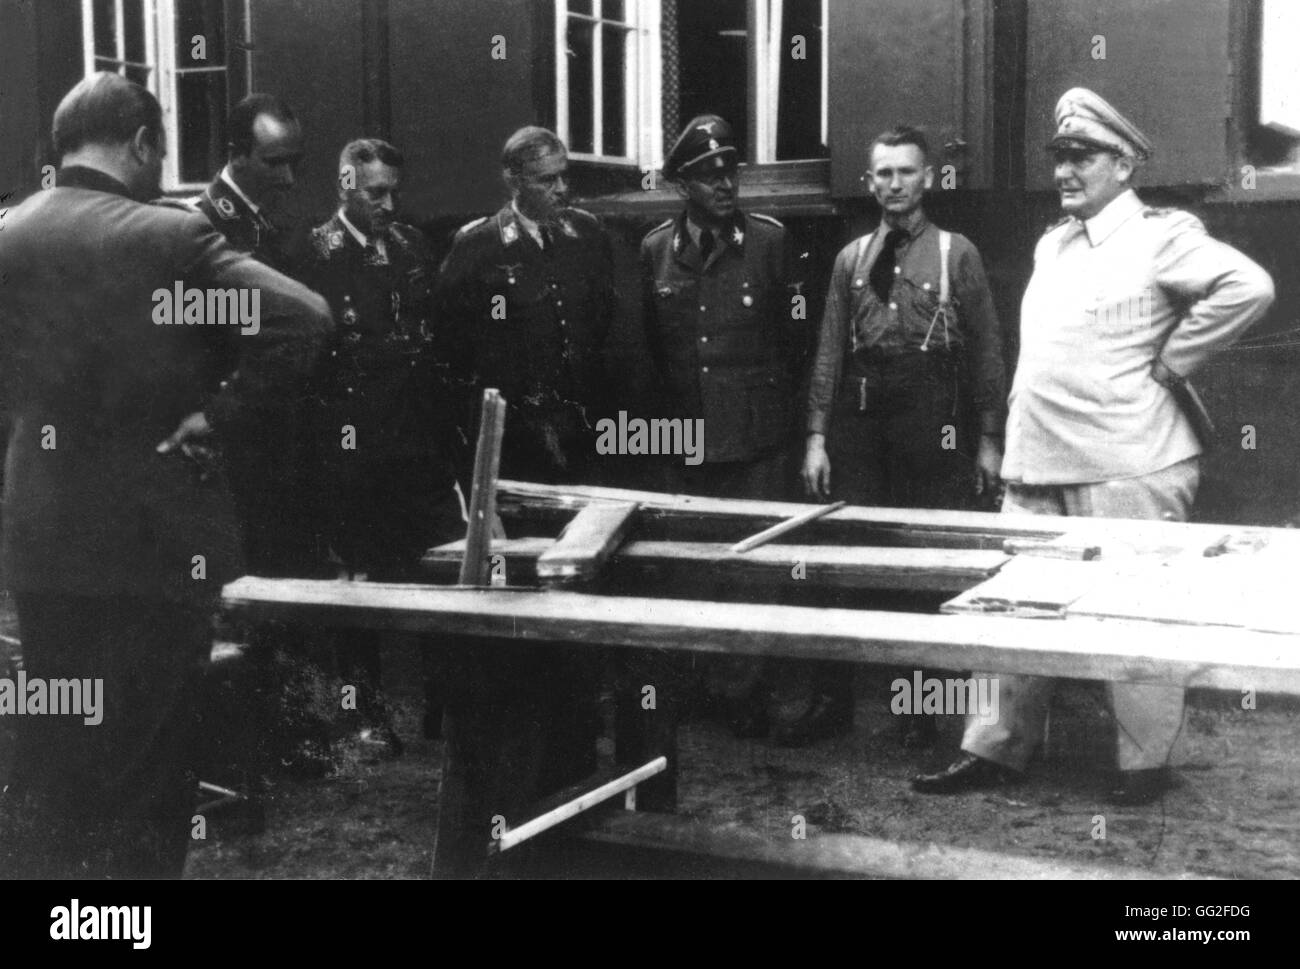 Après la tentative d'assassinat contre Hitler. Göering, Schaub (3e sur la r.), Koller (3e sur le l.) et Fegelein d'oeil sur le site. 20 juillet 1944 Allemagne - Seconde Guerre mondiale Banque D'Images